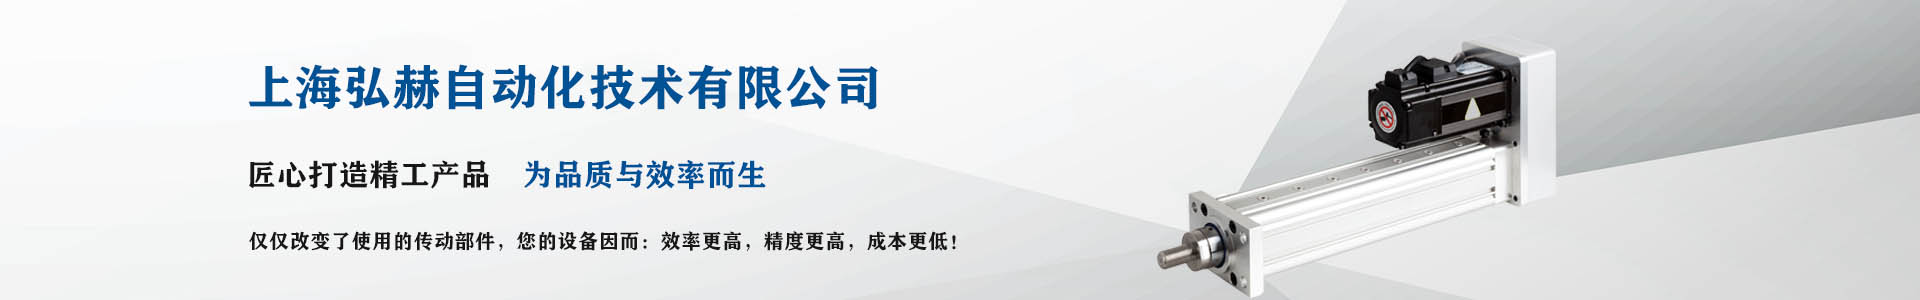 电动缸-伺服电动缸-电动缸厂家-上海弘赫自动化技术有限公司